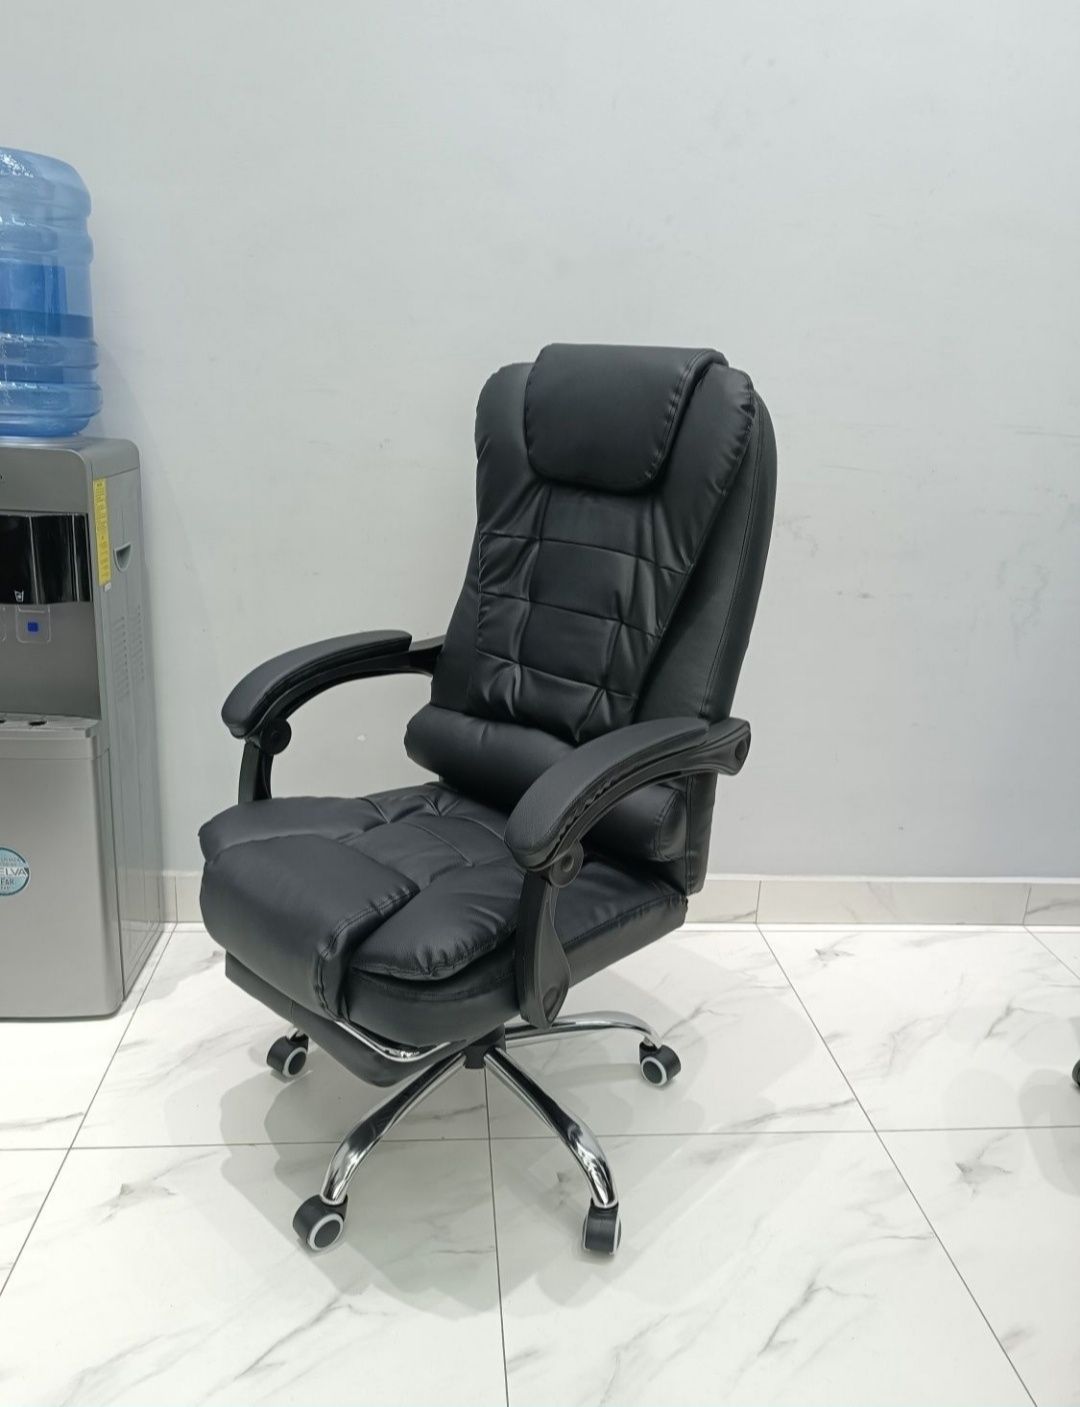 Офисное массажное кресло модель BM-1 black и BM-6 black